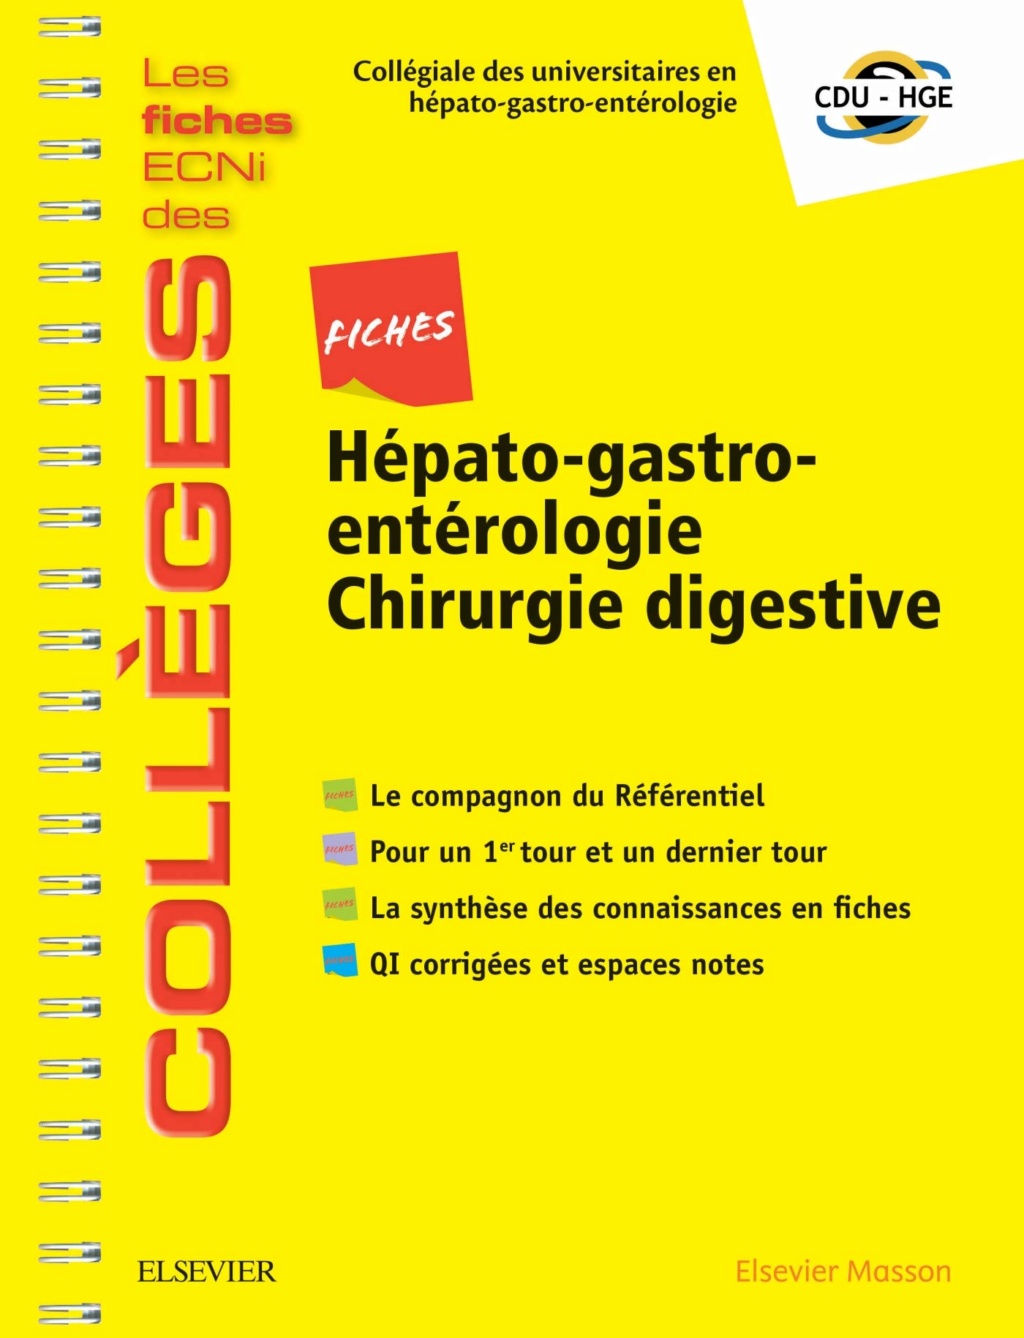 [résolu]Livres Médicales - Fiches Hépato-gastro-entérologie Chirurgie digestive: Les fiches ECNi et QI des Collèges 2019 Fiches11